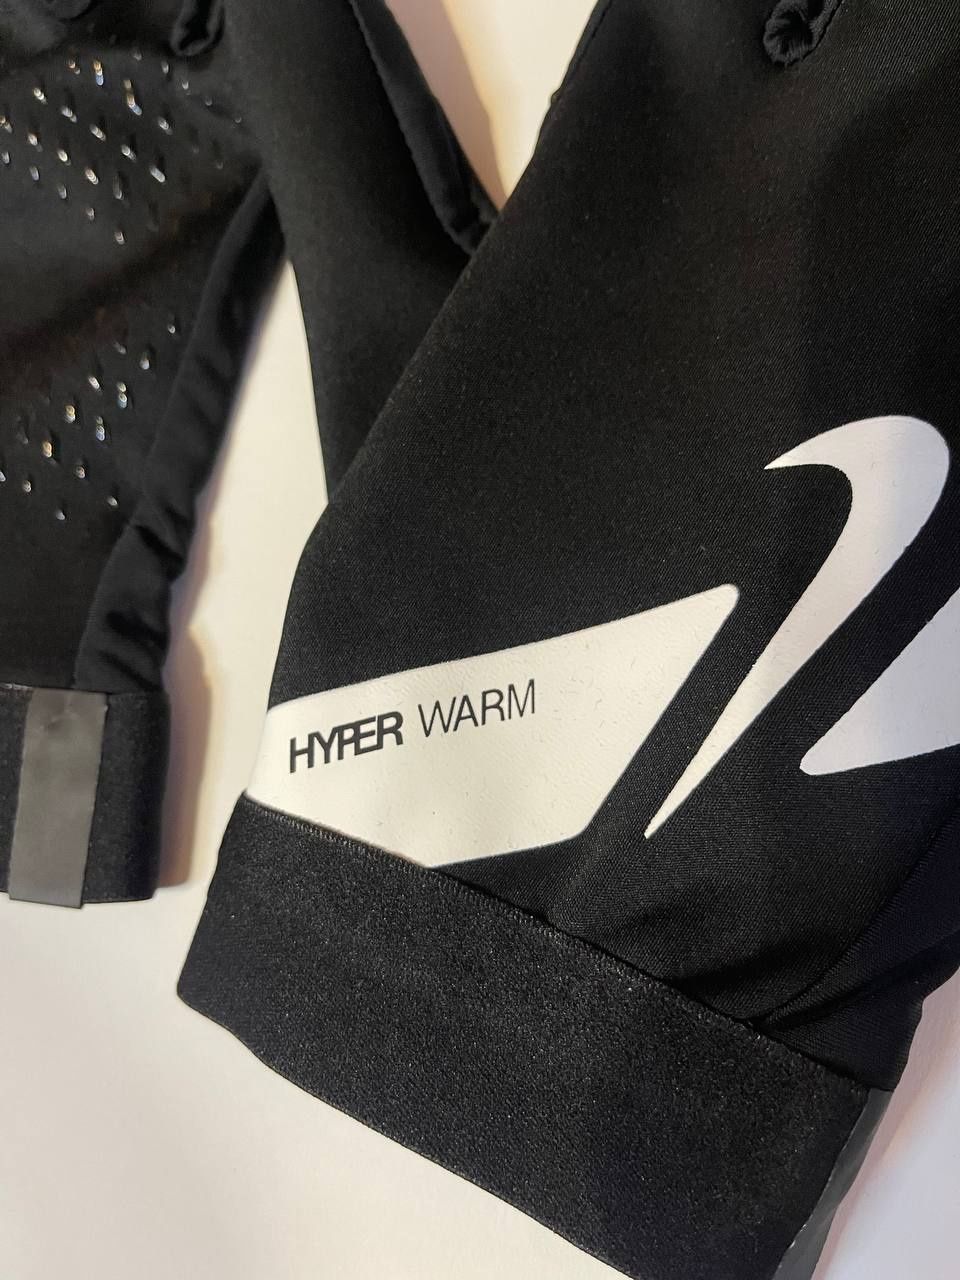 Рукавиці Nike hyper warm